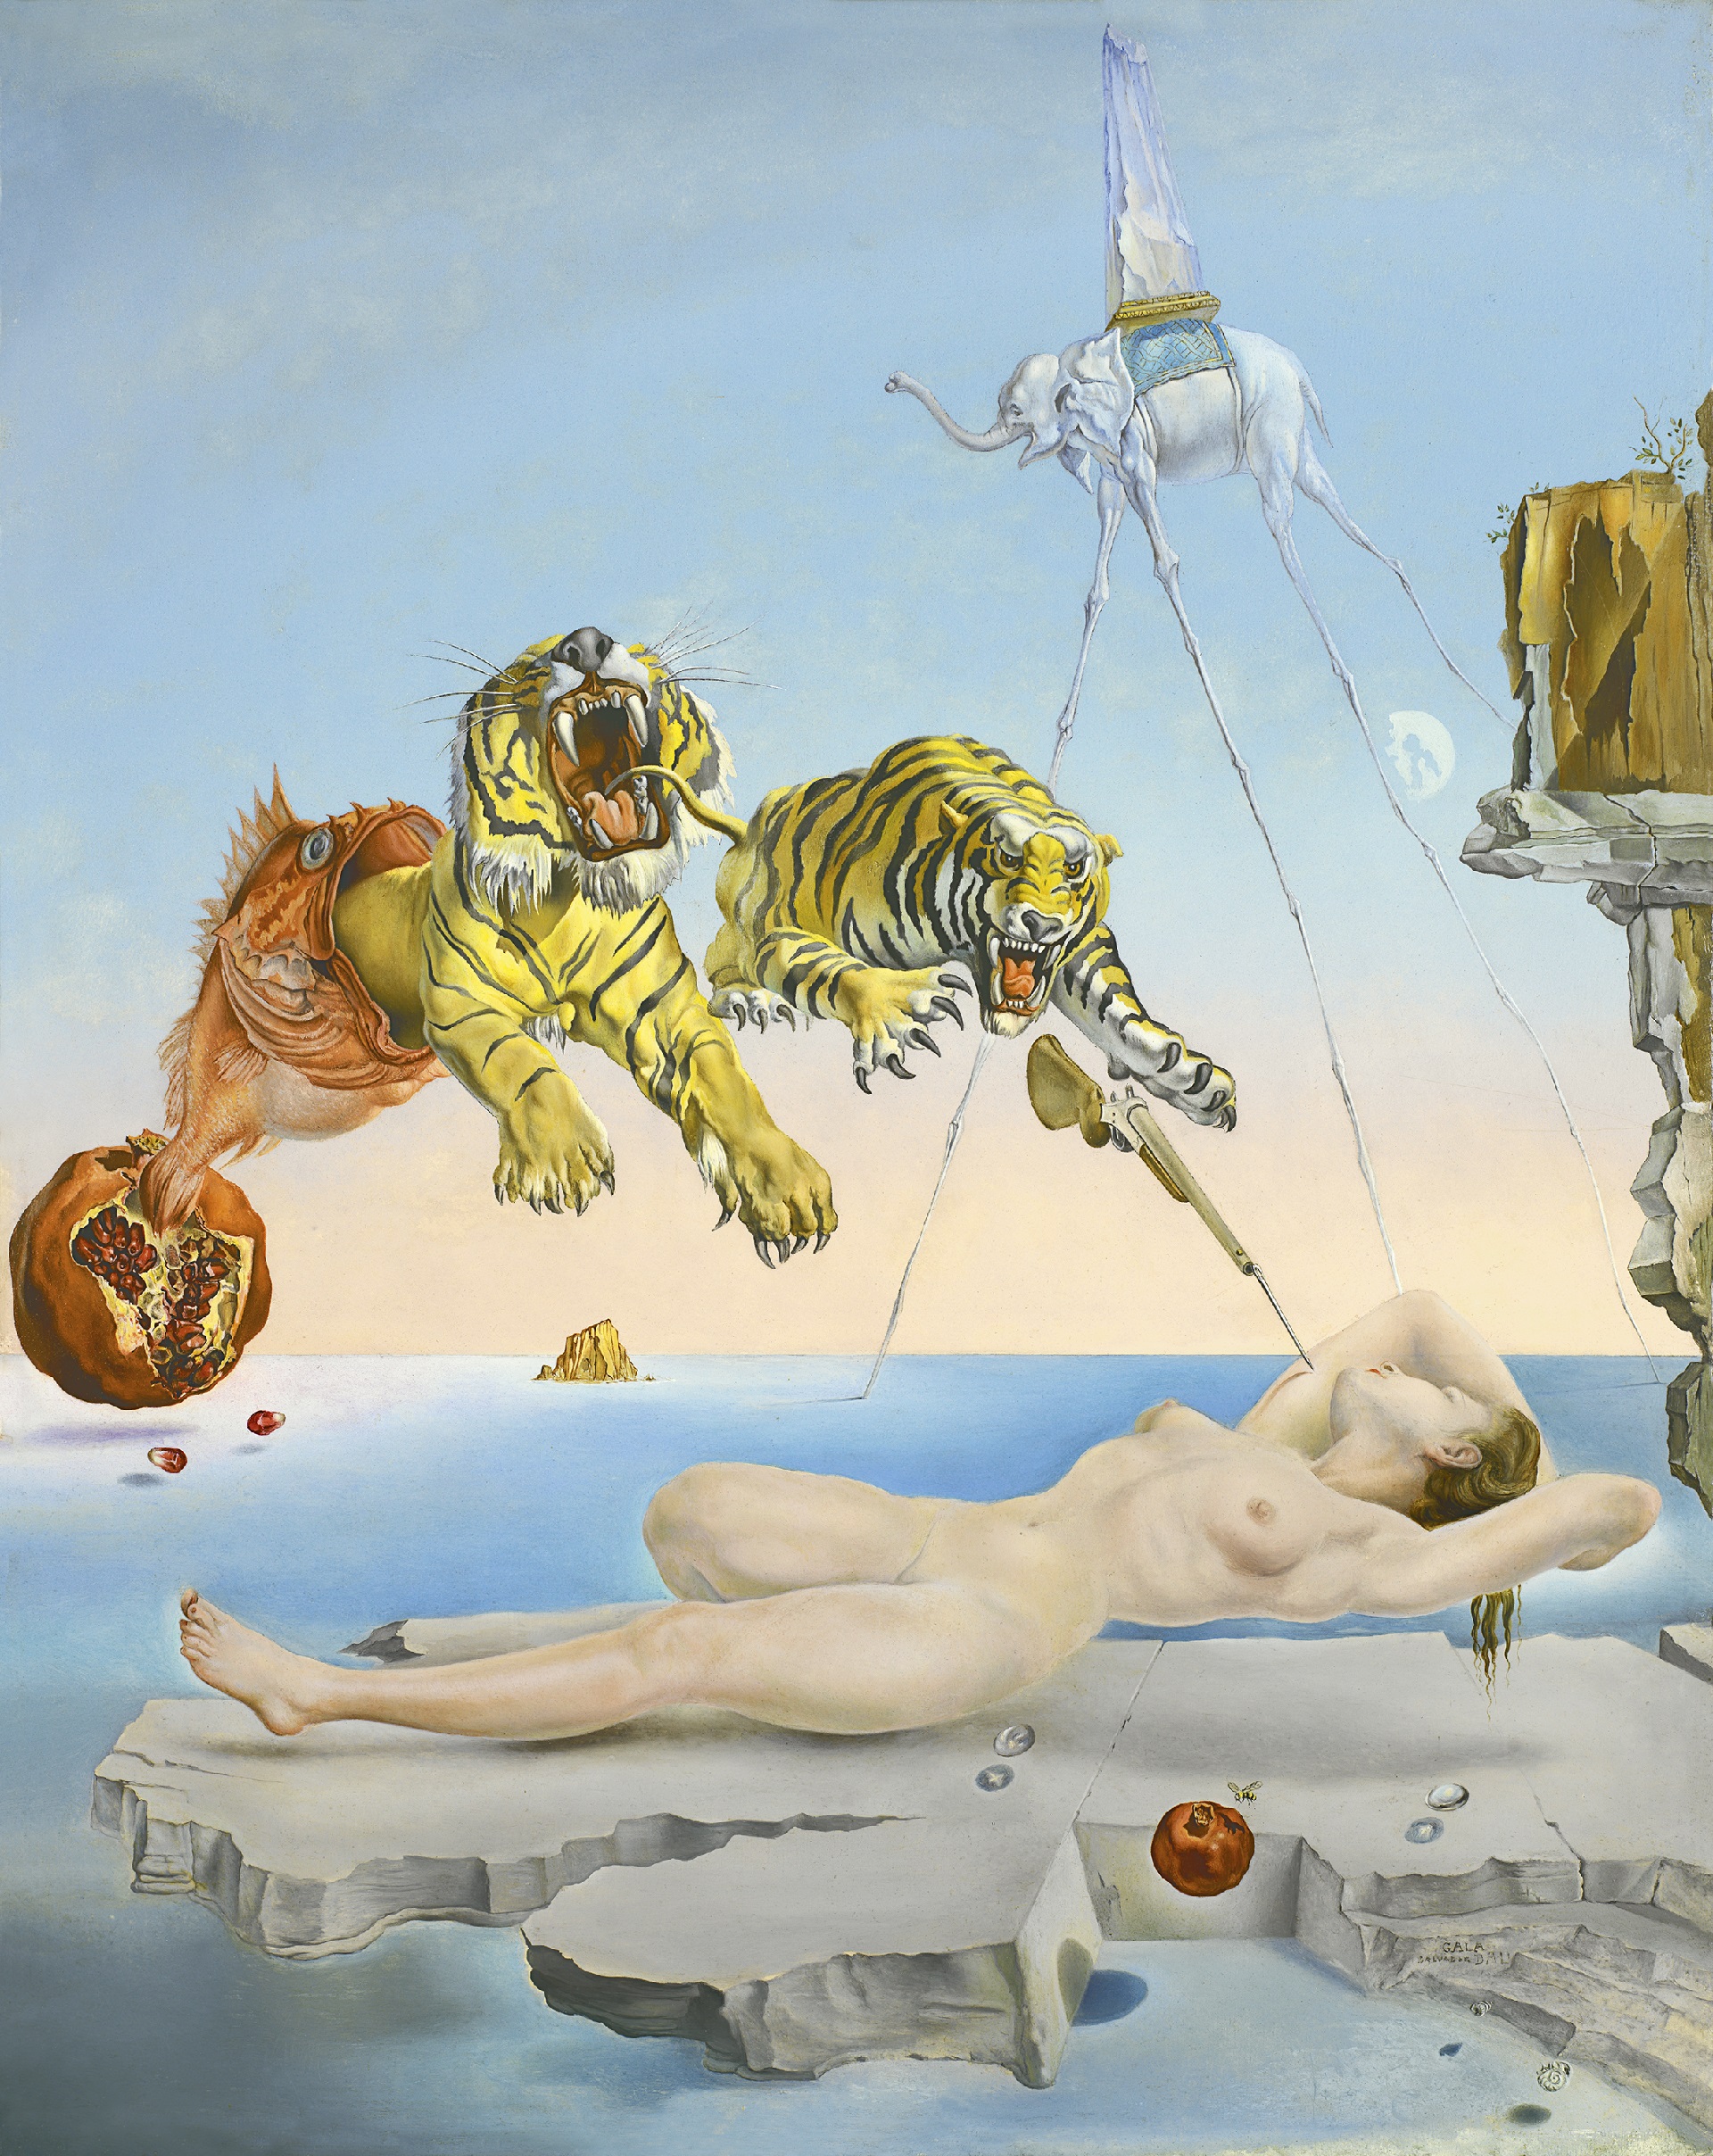 "Sueño causado por el vuelo de una abeja alrededor de una granada un segundo antes del despertar" de Salvador Dalí